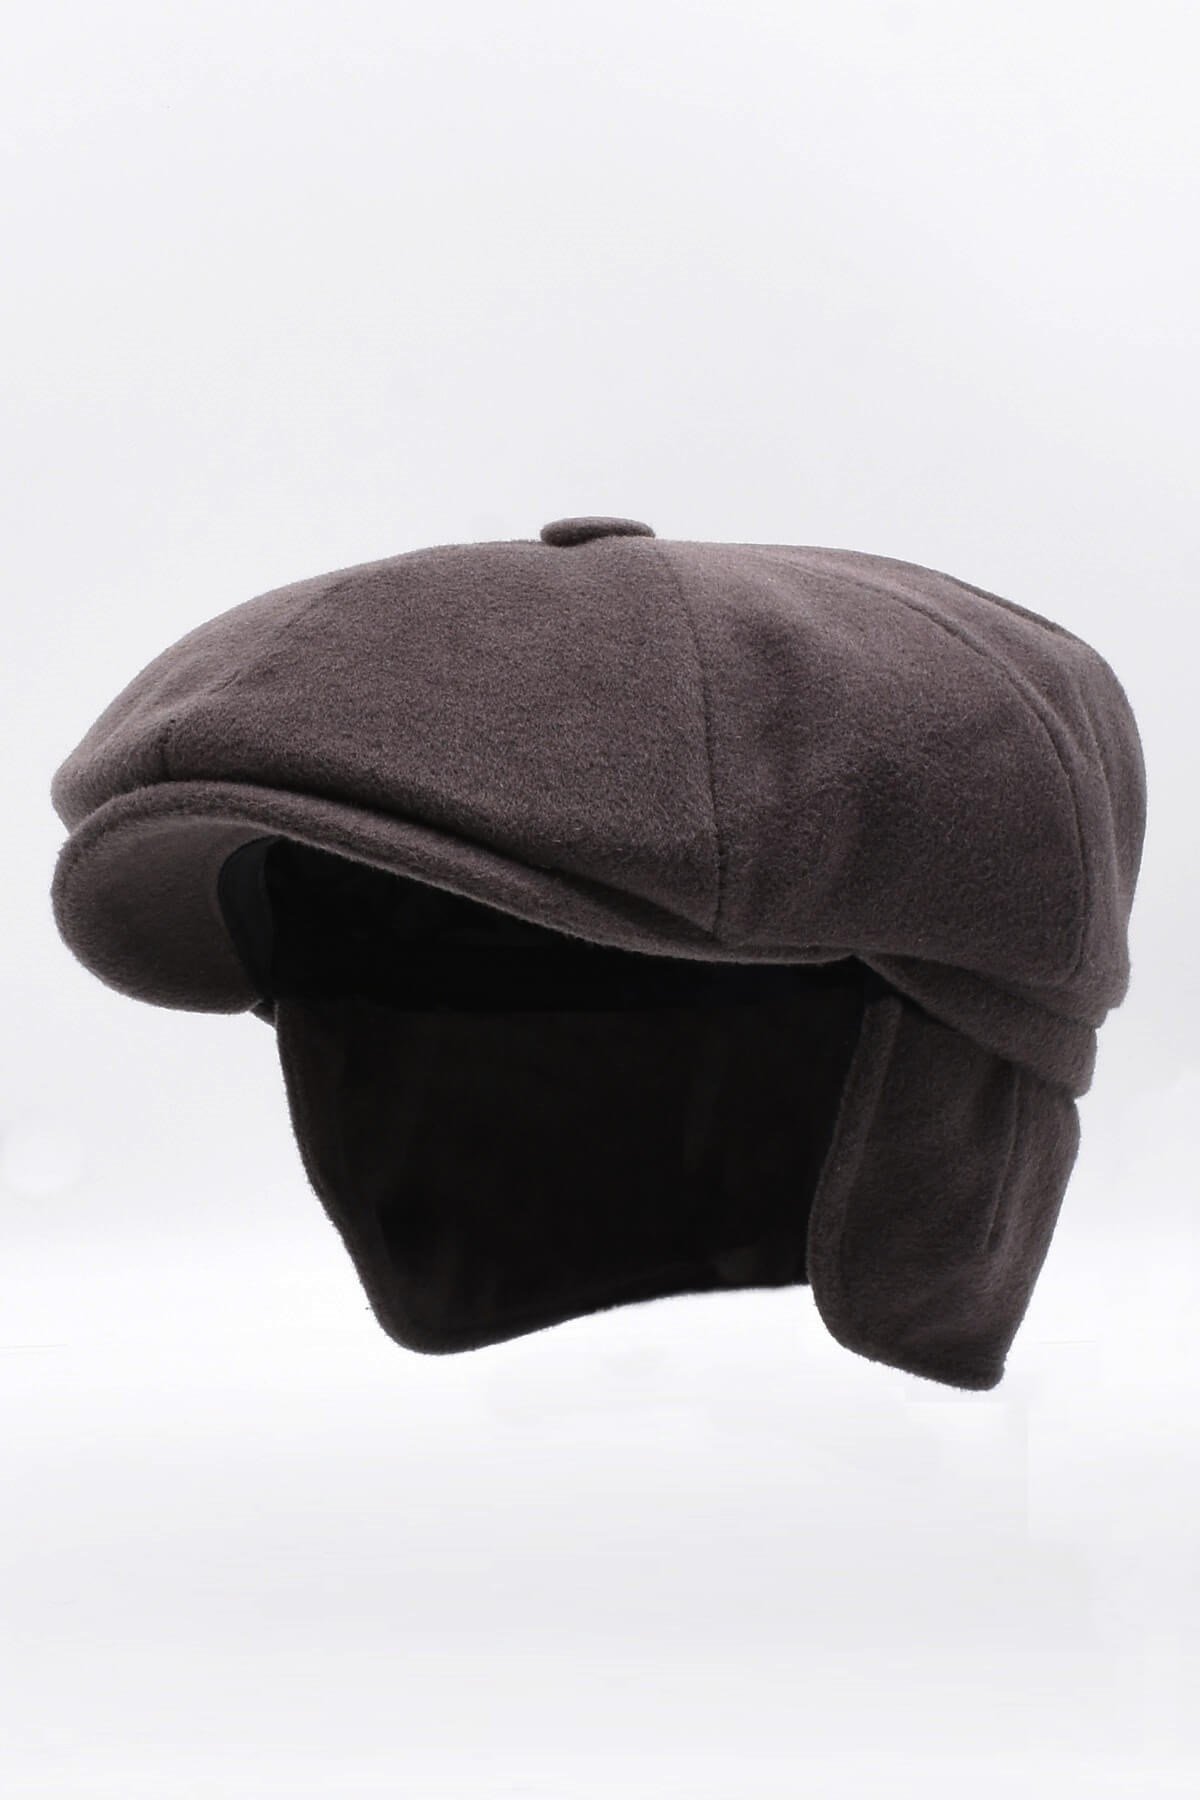 Külah Erkek %100 Kaşmir Yün Kışlık Kasket Kulaklı Şapka-Kahve KLH7051